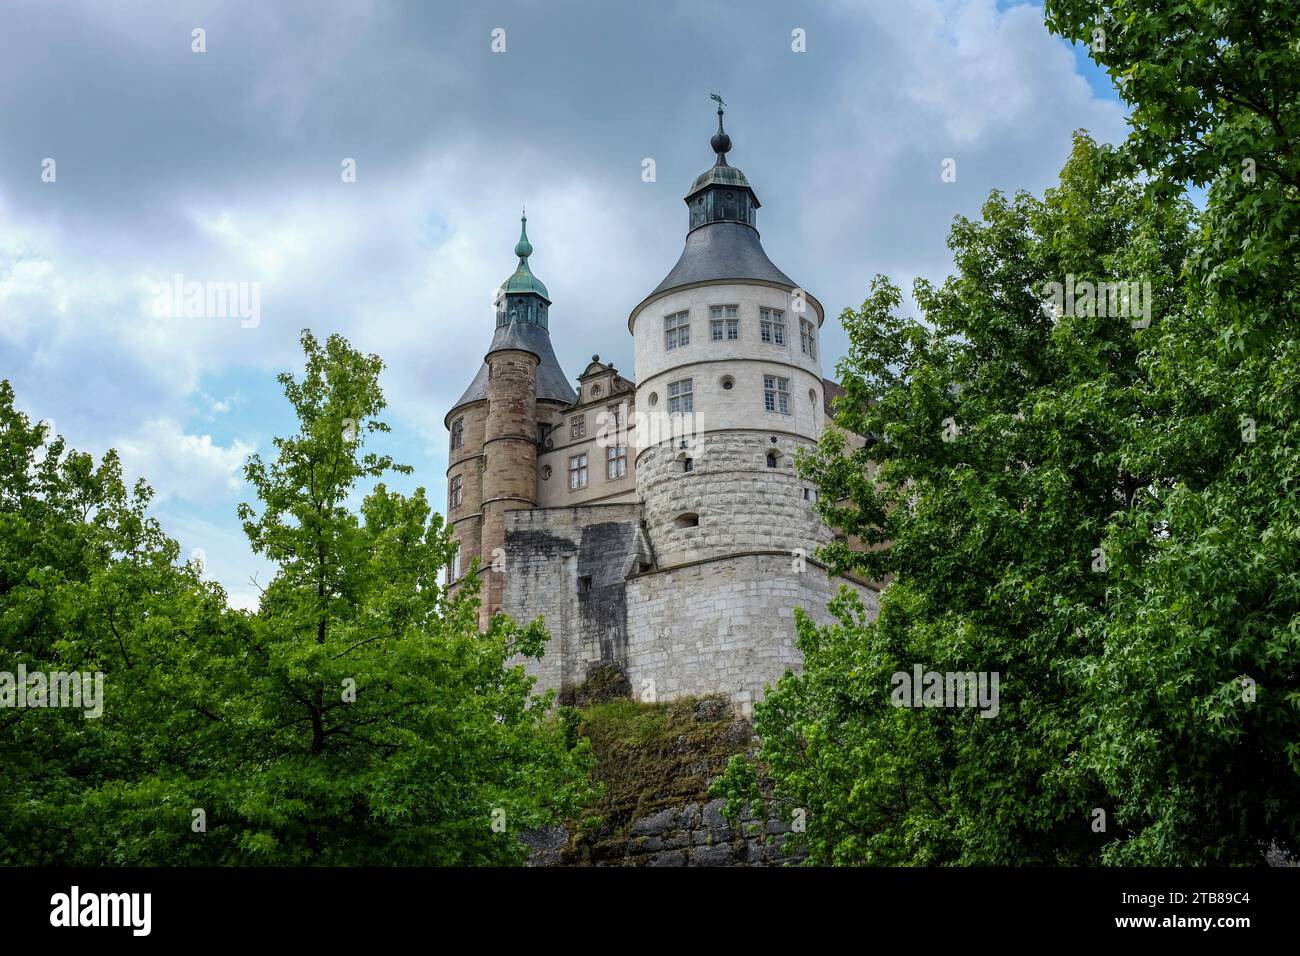 Montbeliard (Nordostfrankreich): Schloss Montbeliard, auch bekannt als Schloss des herzogs von Württemberg Stockfoto